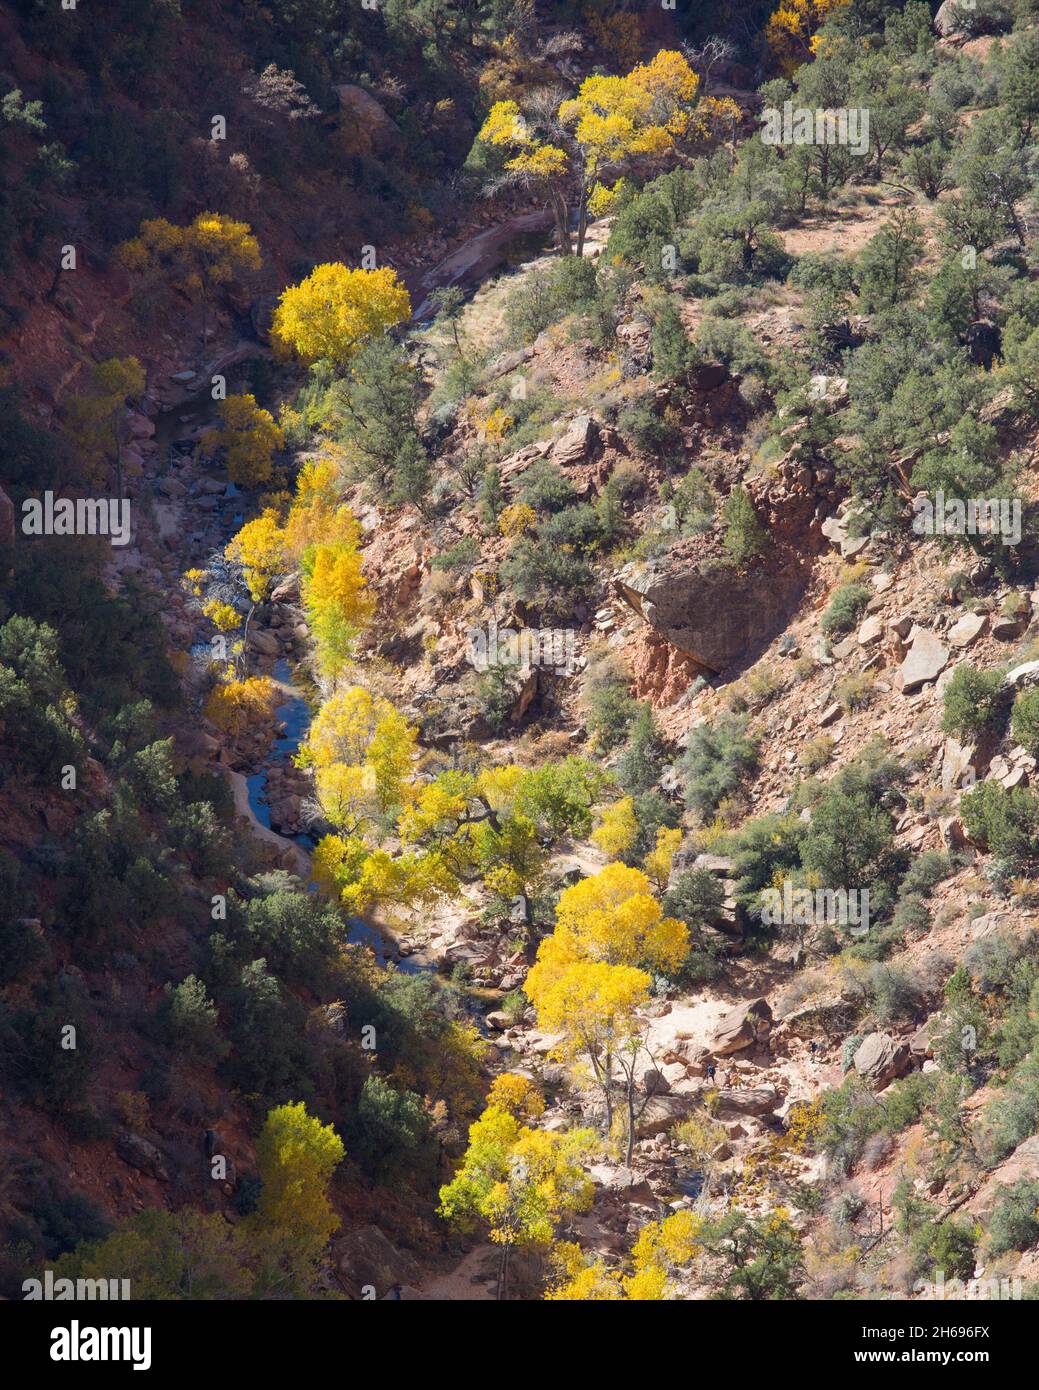 Zion National Park, Utah, USA. Vista su Pine Creek dal Canyon Overlook Trail, in autunno, il fogliame dorato delle cottonwood lungo il fiume prominente. Foto Stock